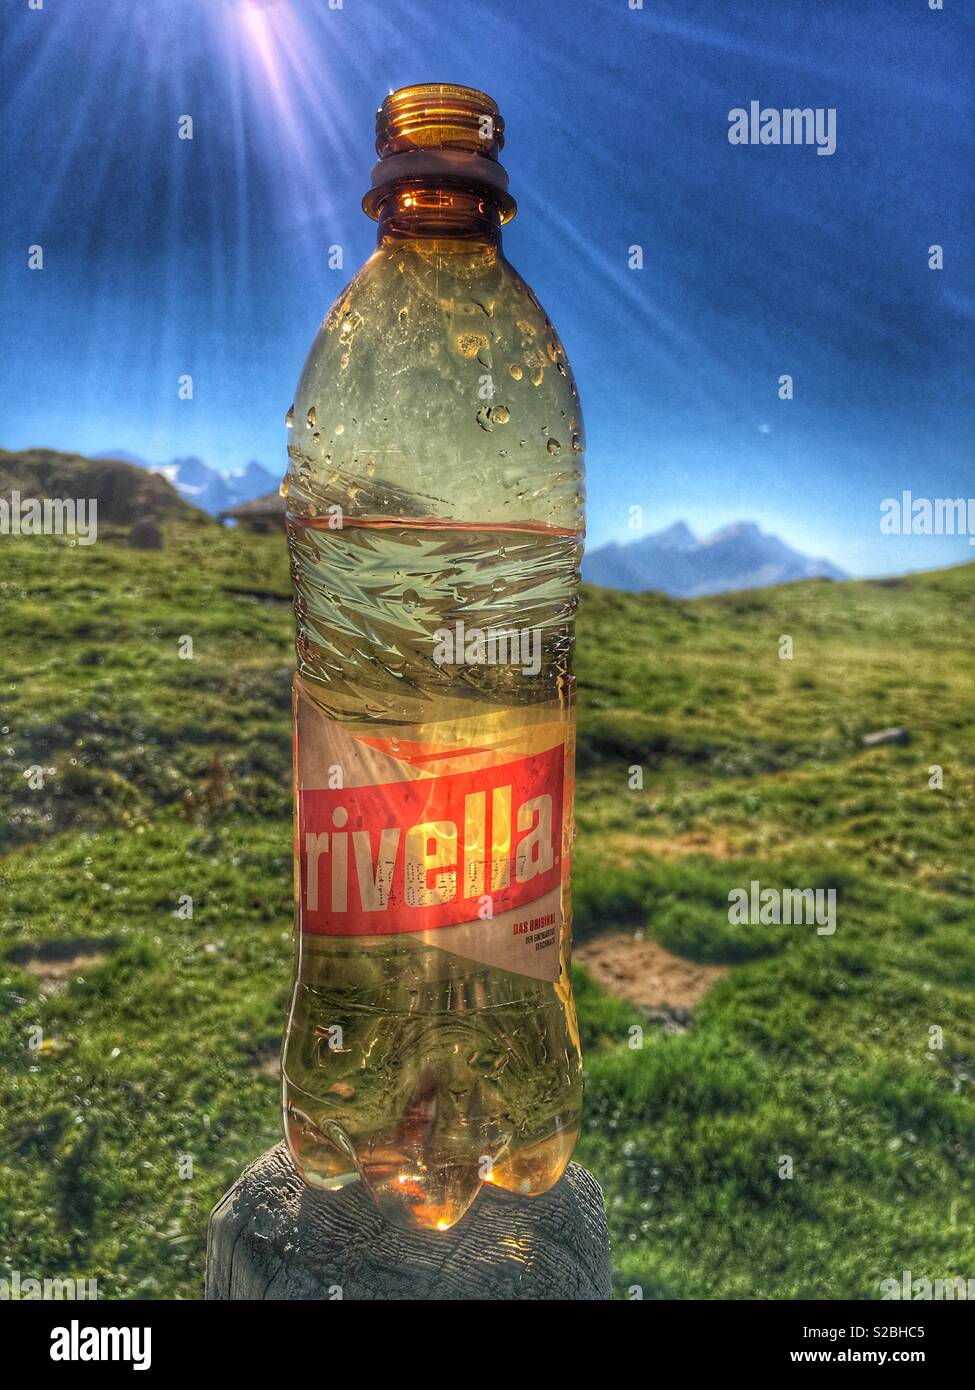 Come fresco come si arriva. Bottiglia di Rivella bere nelle alpi svizzere in un caldo giorno d'estate. Riflessioni. Foto Stock